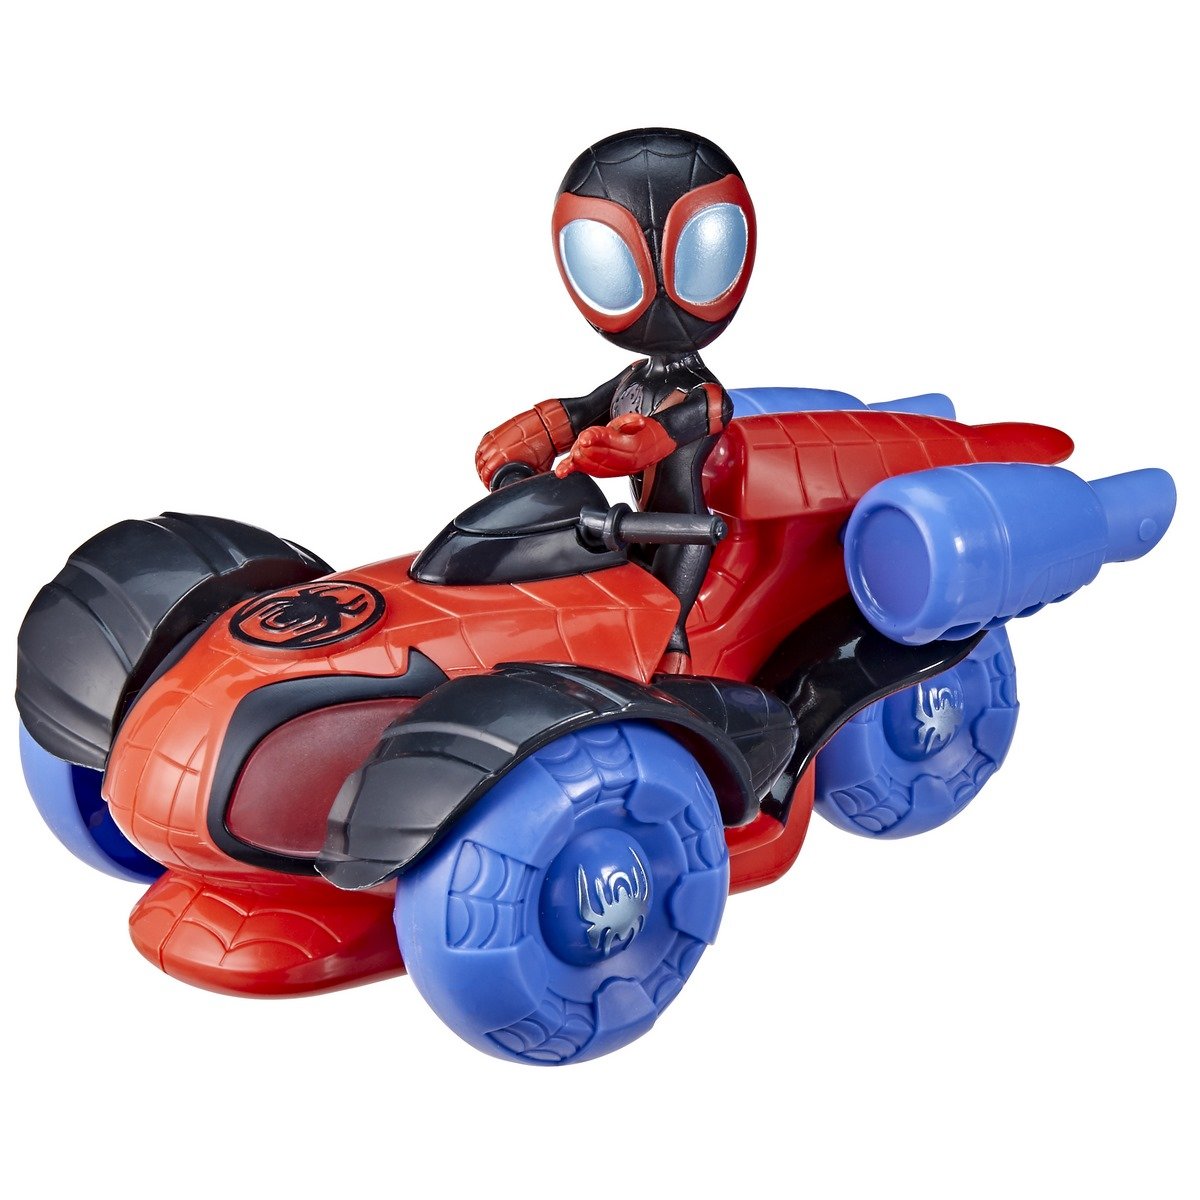 Power Rollers (Spidey) de Marvel's Spidey et Ses Incroyables Amis - Voiture  de 15 cm Qui Recule